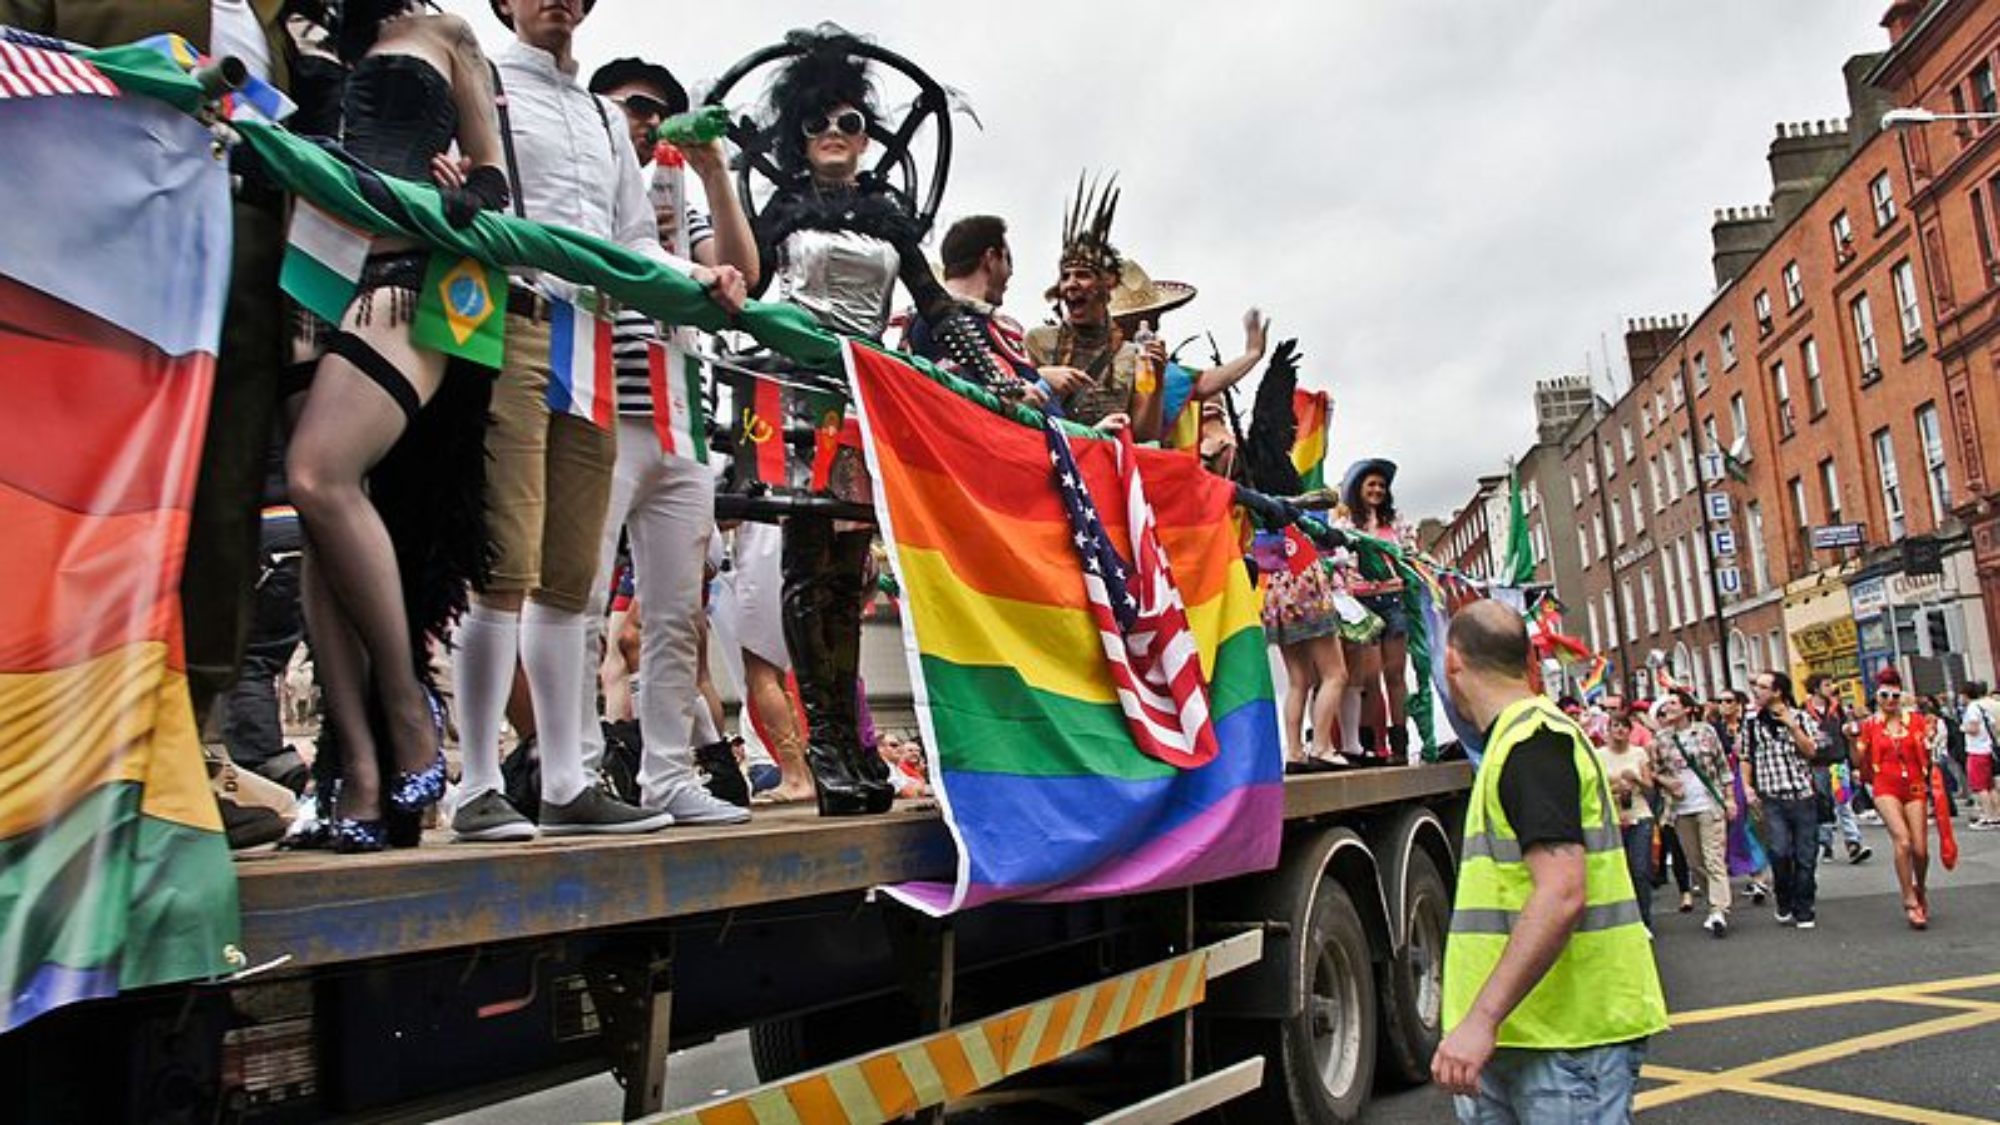 Ireland LBTQ pride parade